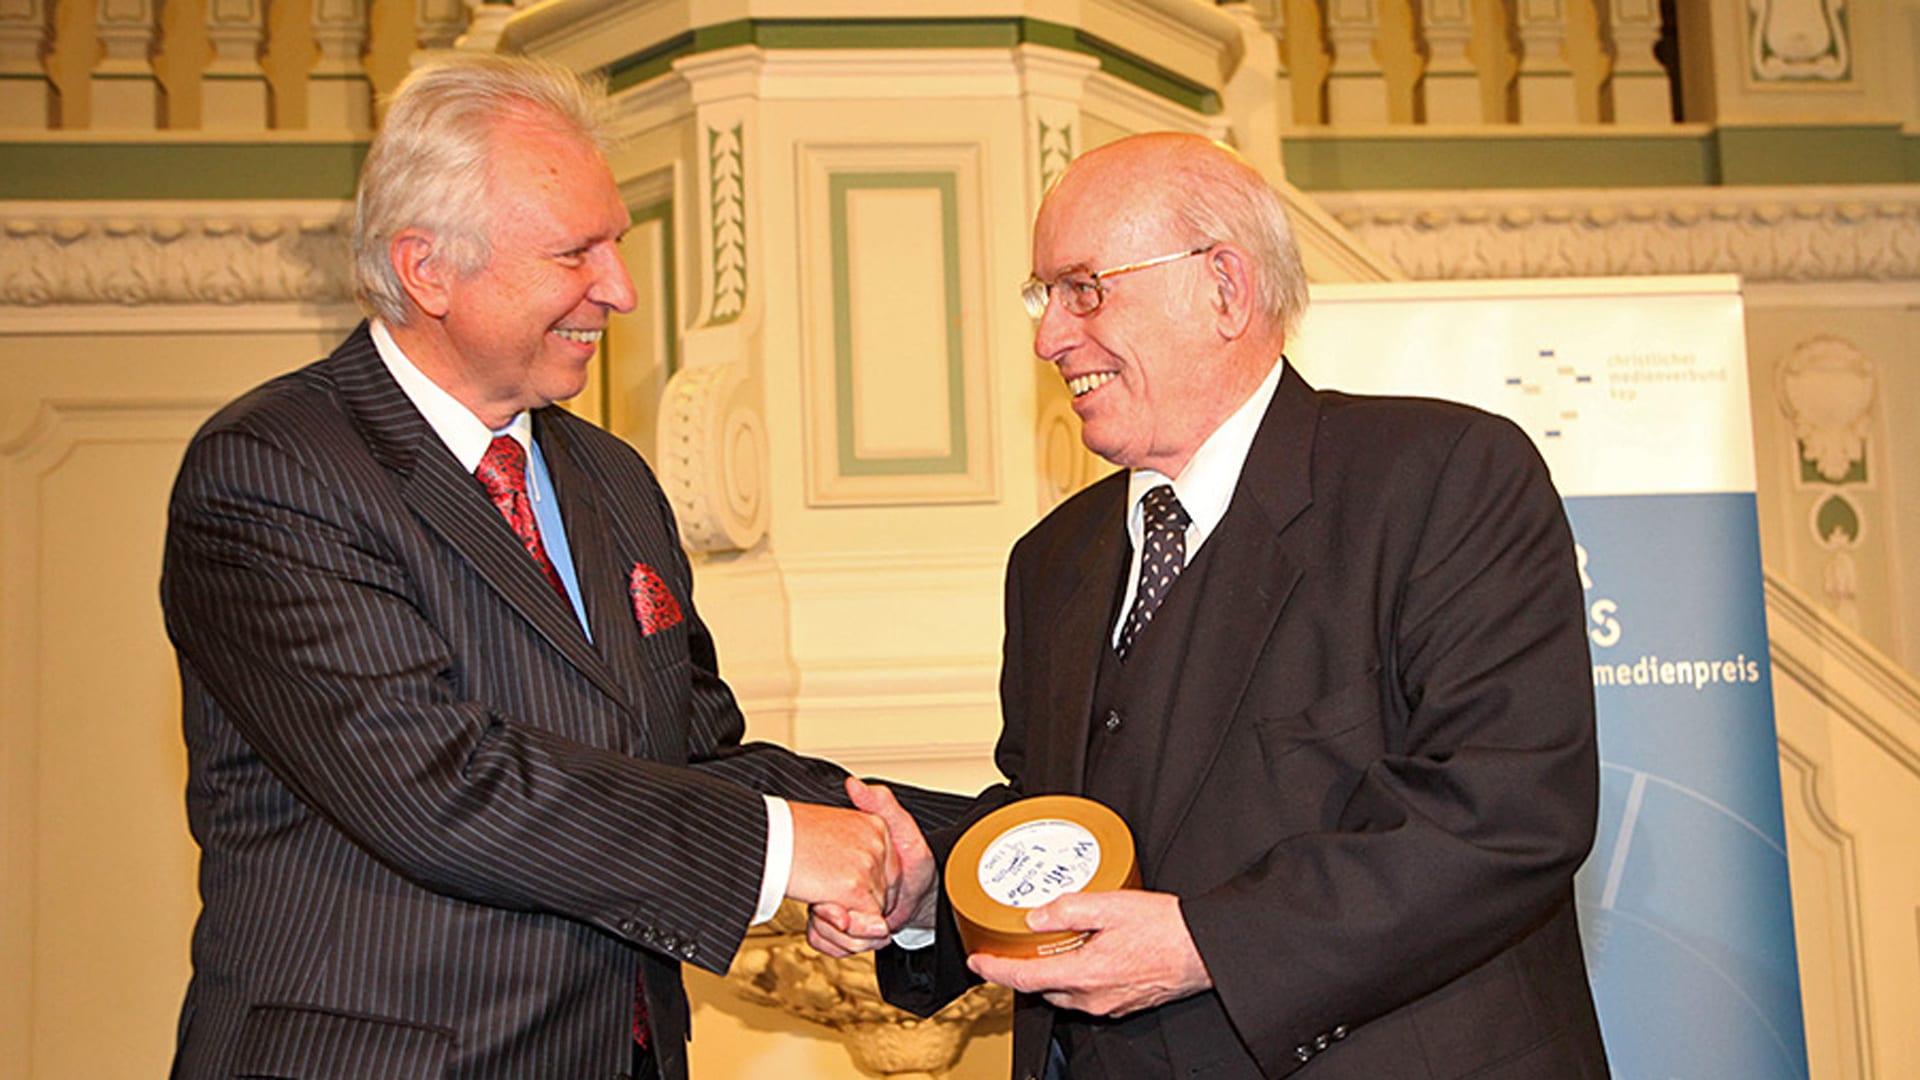 Ein „Goldener Kompass“ für sein Lebenswerk: 2010 erhielt Horst Marquardt den Medienpreis der Christlichen Medieninitiative pro